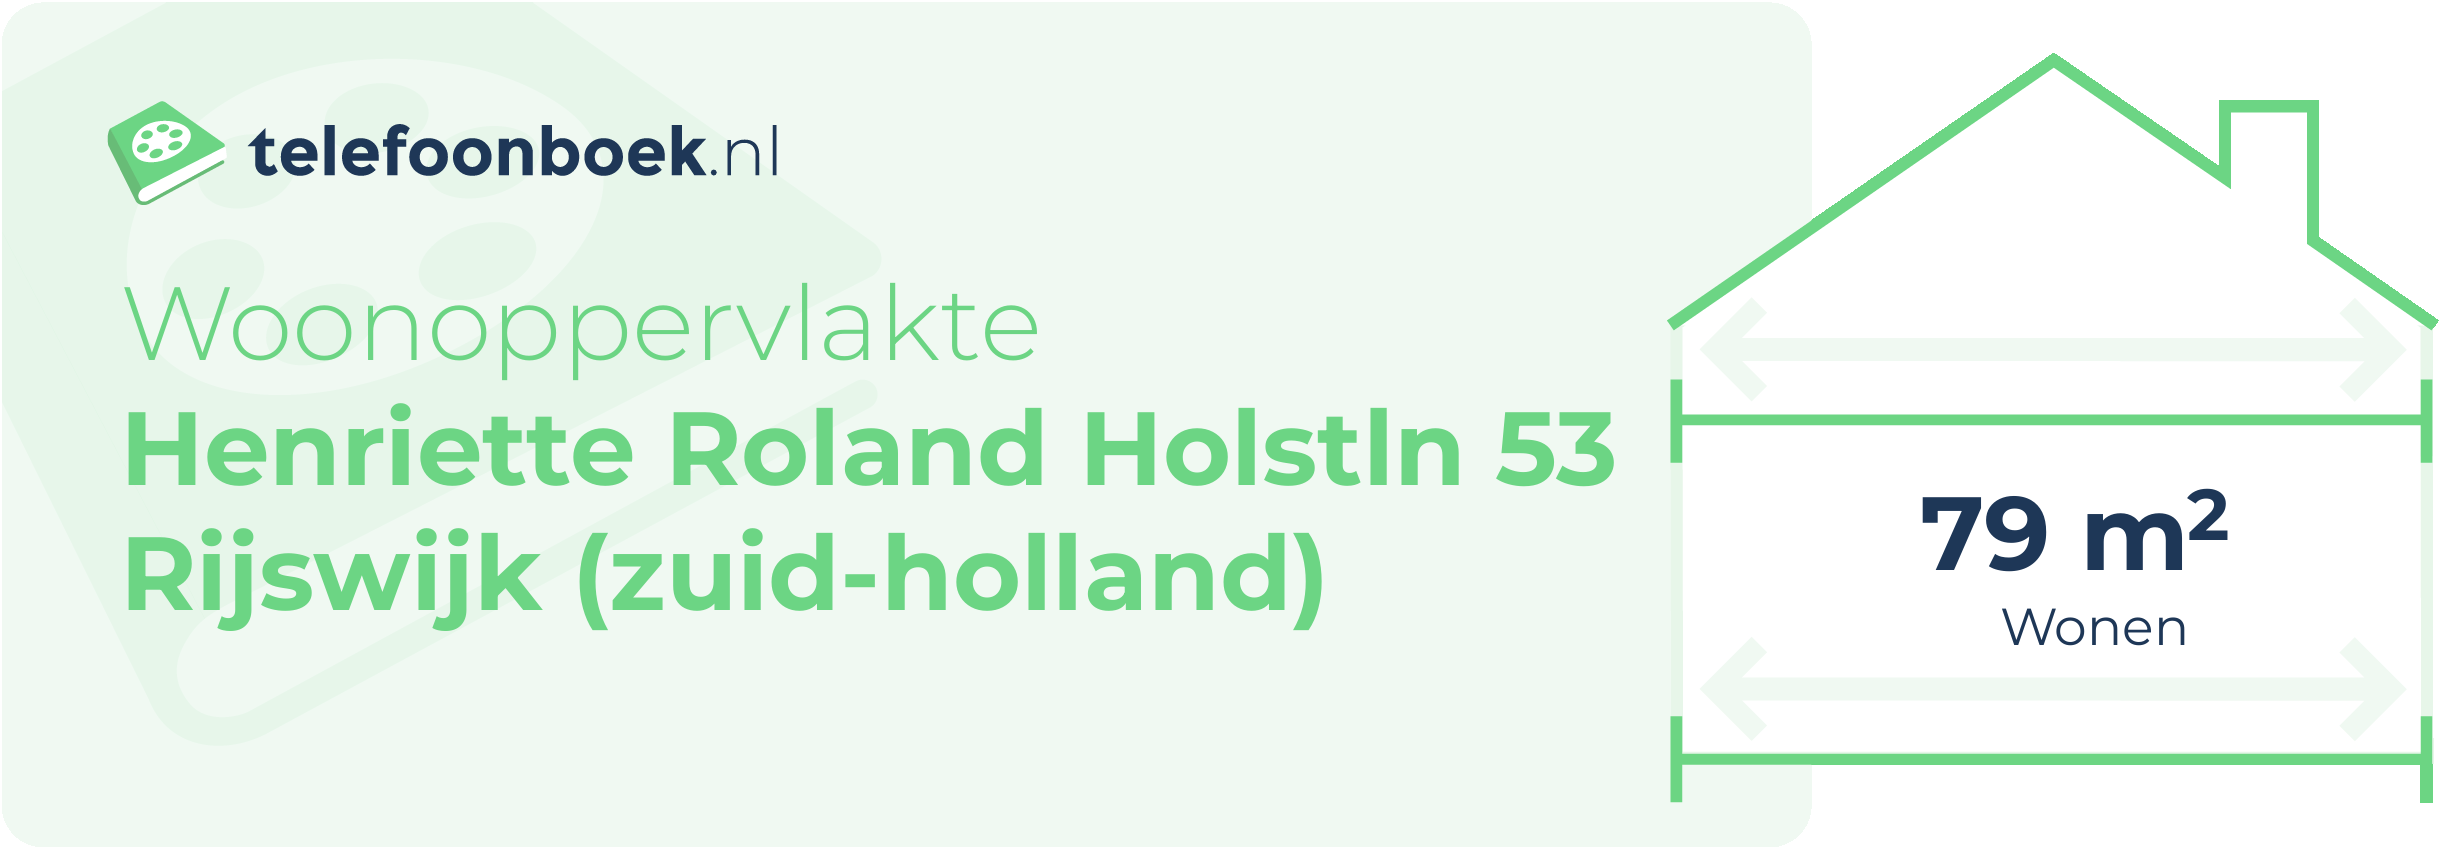 Woonoppervlakte Henriette Roland Holstln 53 Rijswijk (Zuid-Holland)